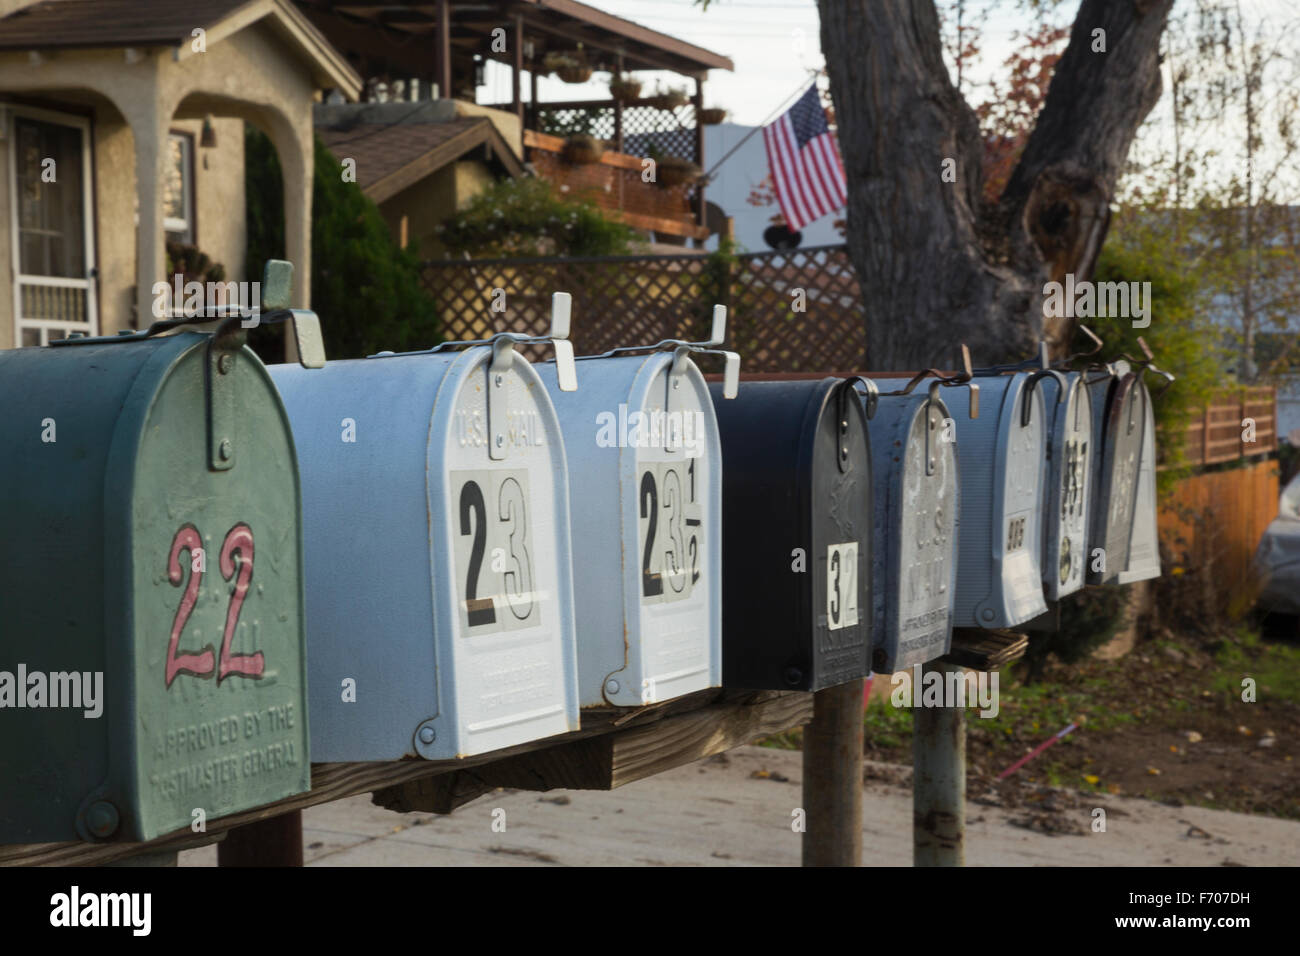 Oak View, Californie, USA, le 15 décembre, les boîtes aux lettres alignés Banque D'Images